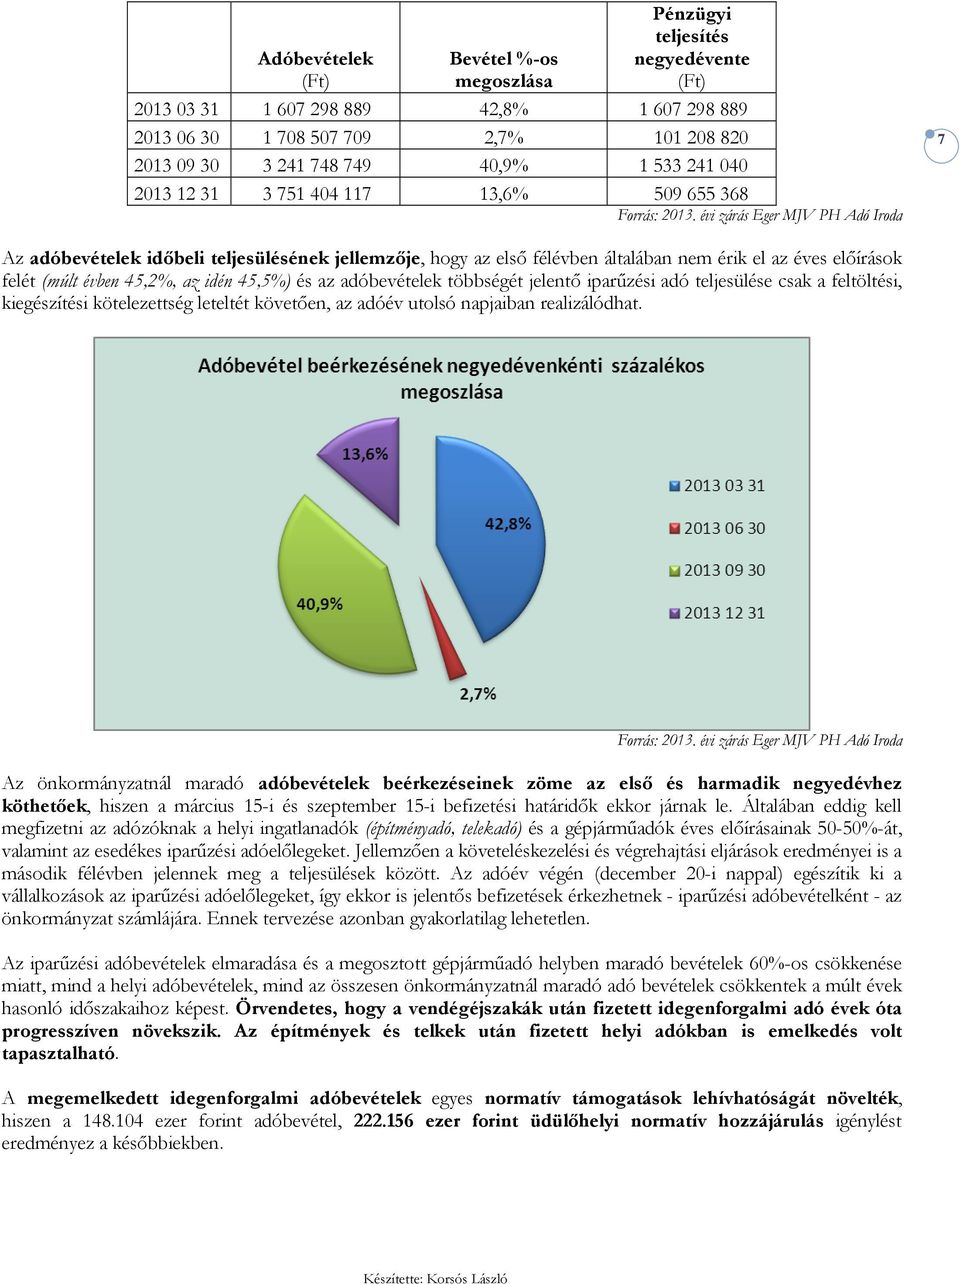 idén 45,5%) és az adóbevételek többségét jelentı iparőzési adó teljesülése csak a feltöltési, kiegészítési kötelezettség leteltét követıen, az adóév utolsó napjaiban realizálódhat.